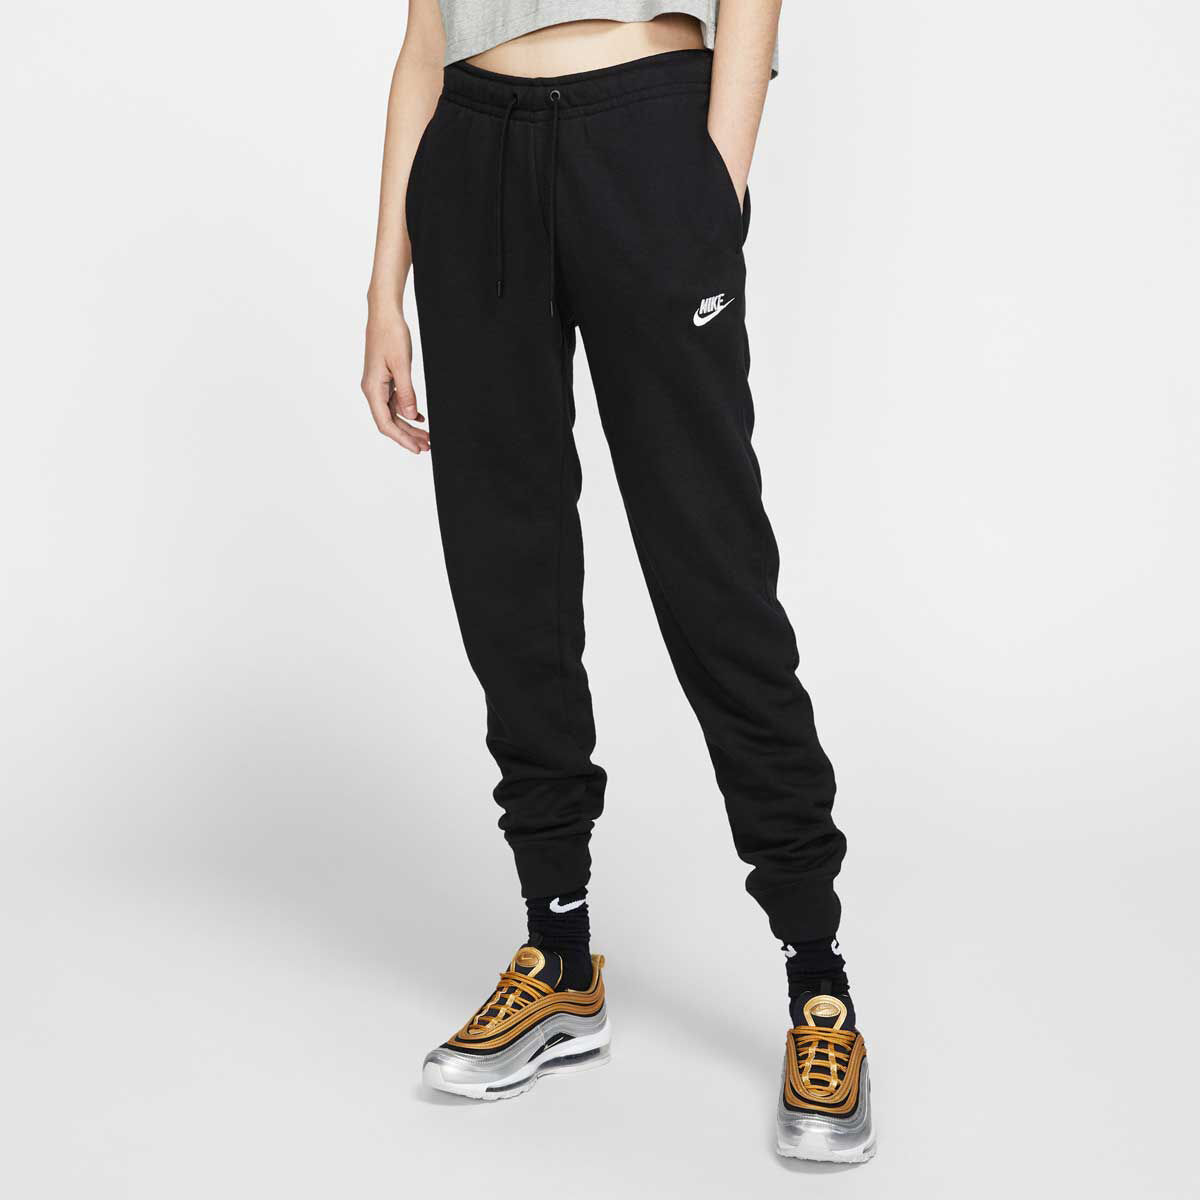 Women's Trousers & Tights. Nike ZA